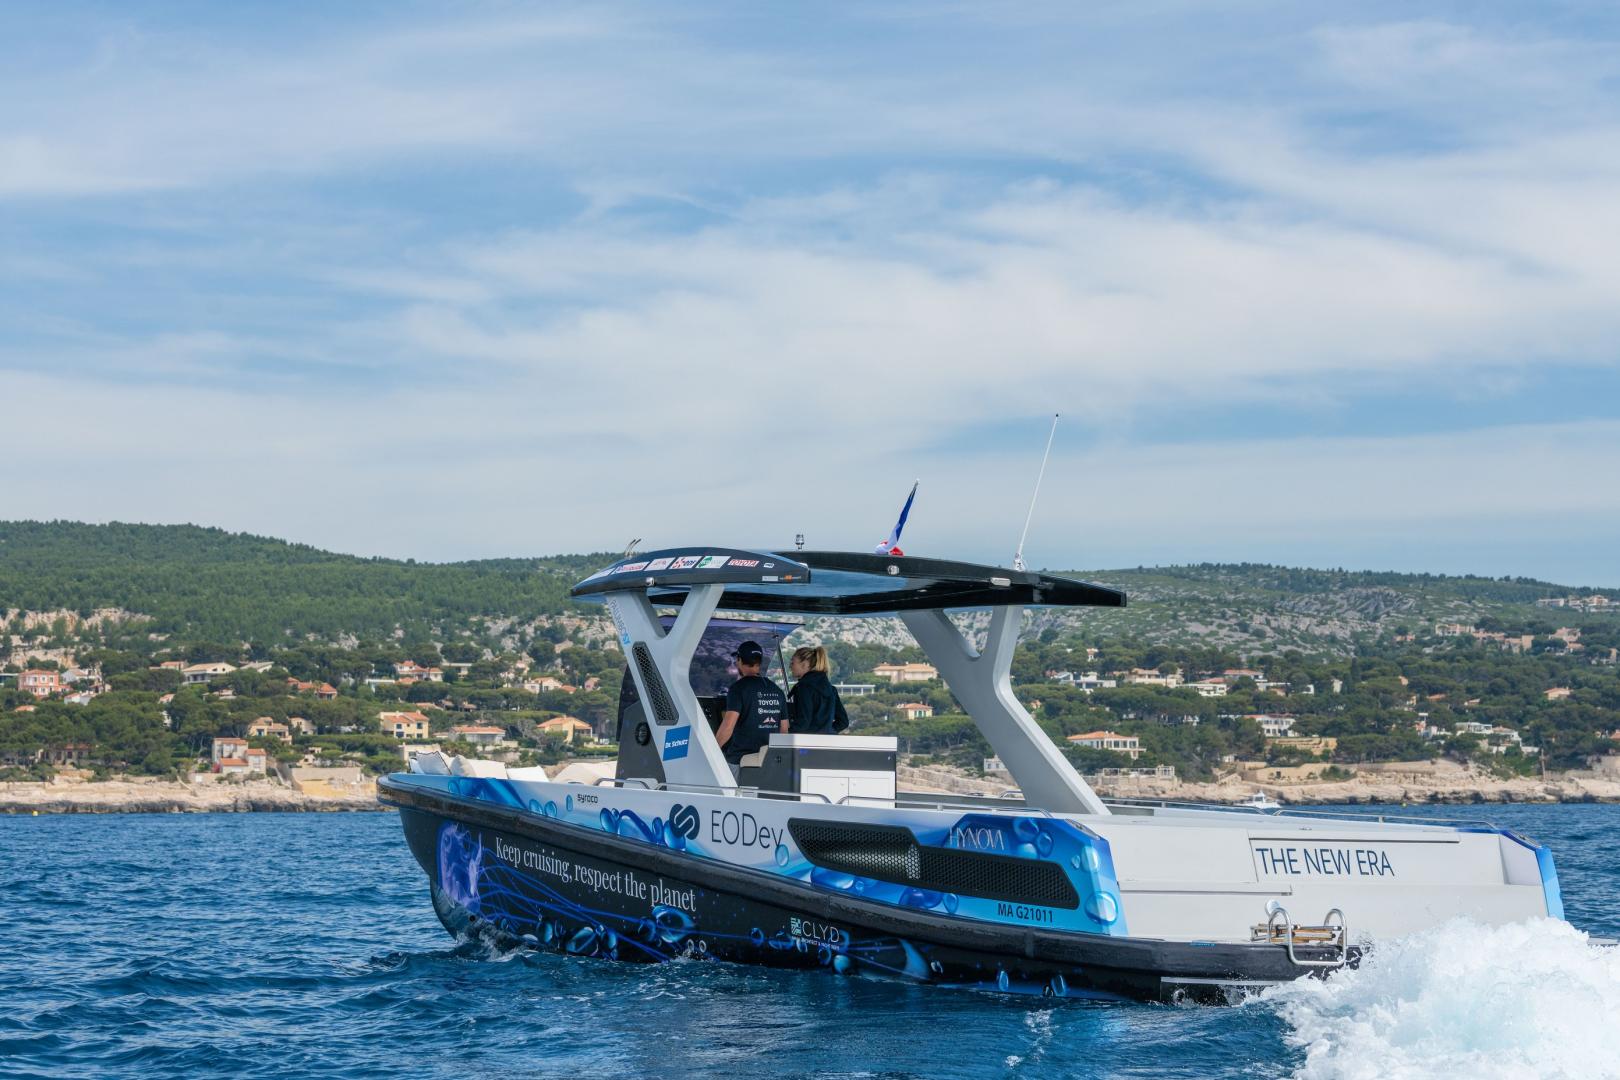  8th Monaco Energy Boat Challenge (6-10 July 2021)